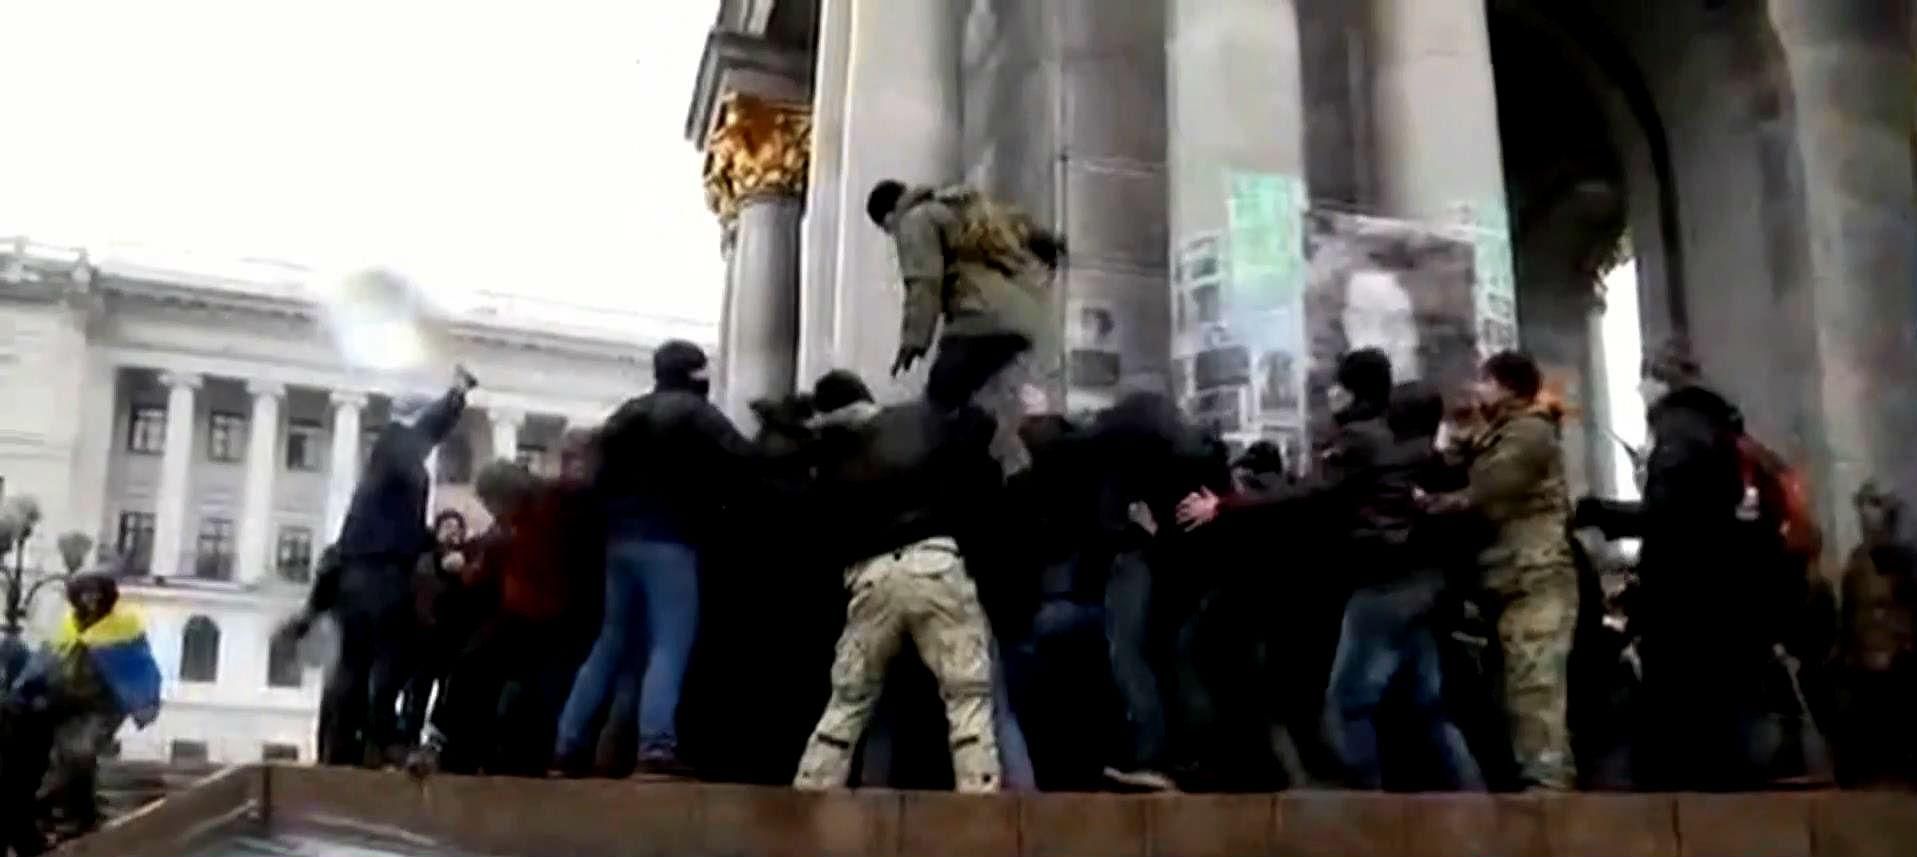 На Майдане произошла драка